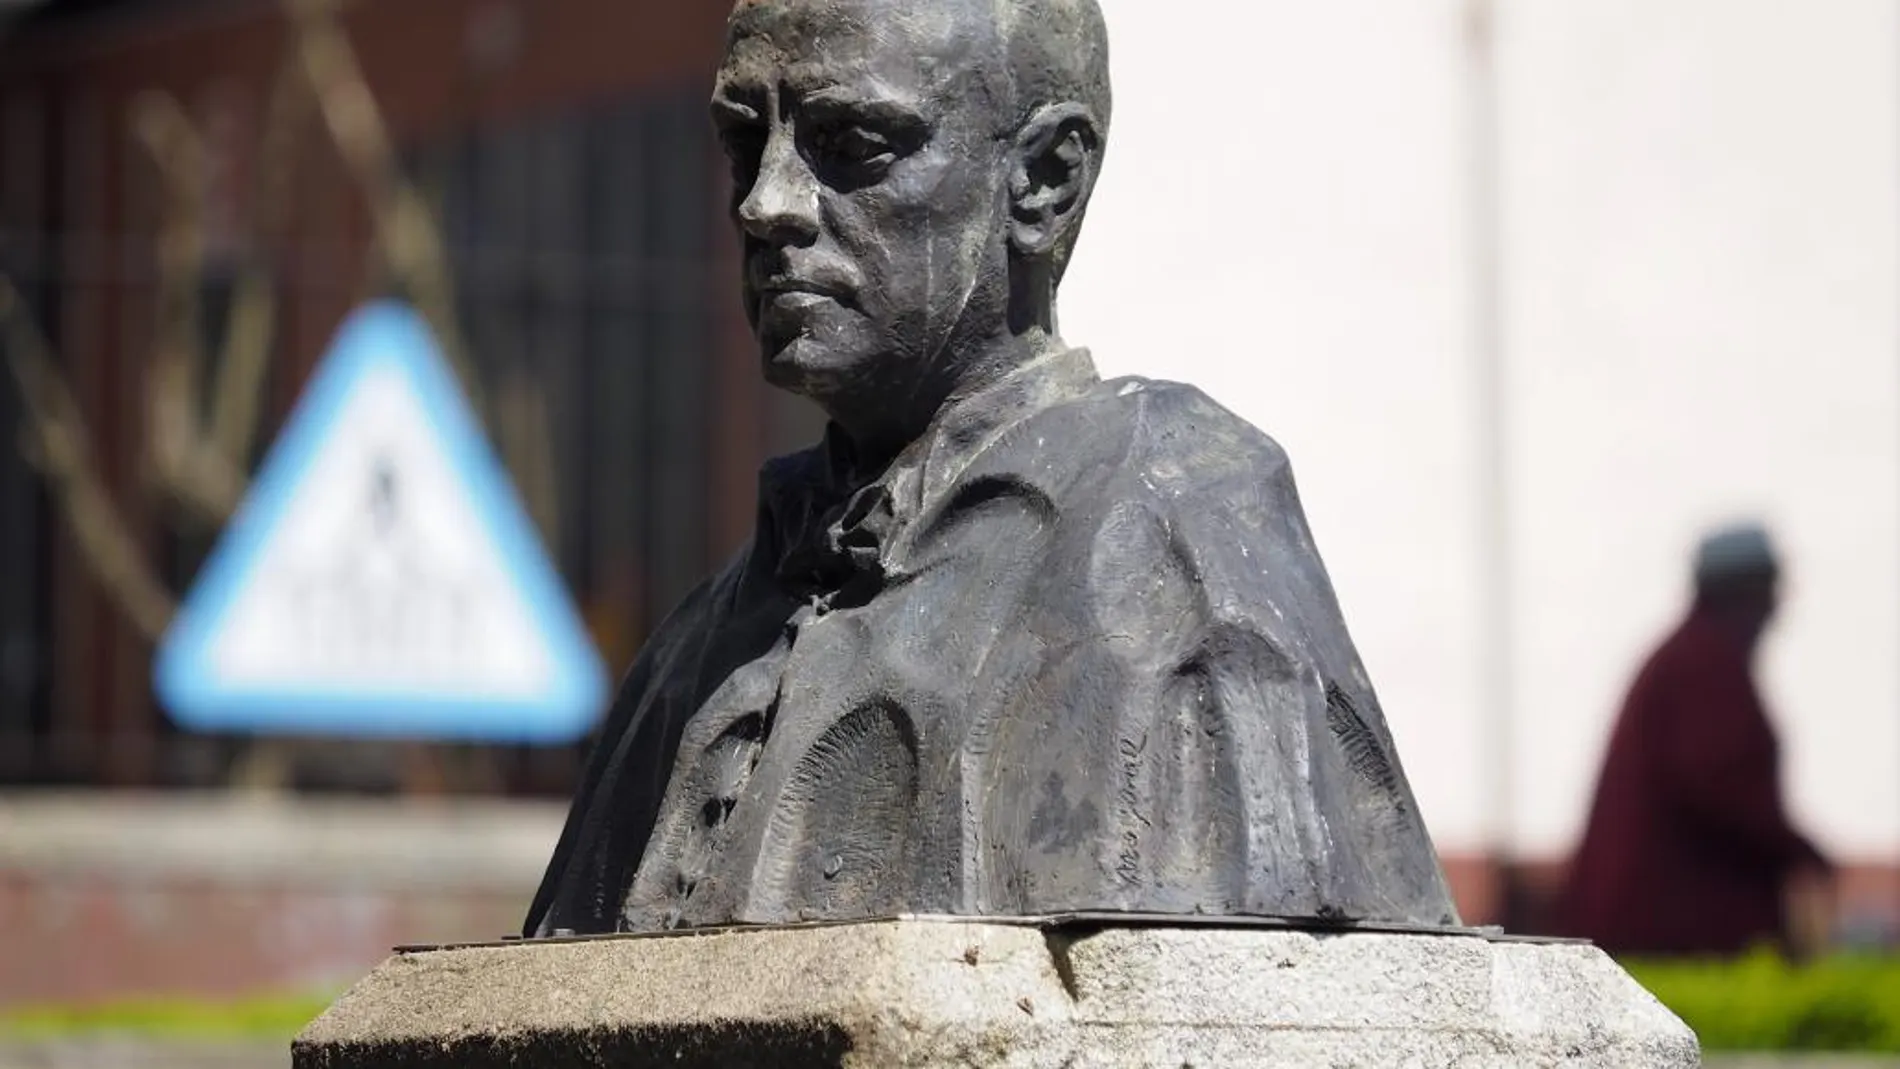 El busto de Manuel Fraga ha sido colocado de nuevo en el pedestal